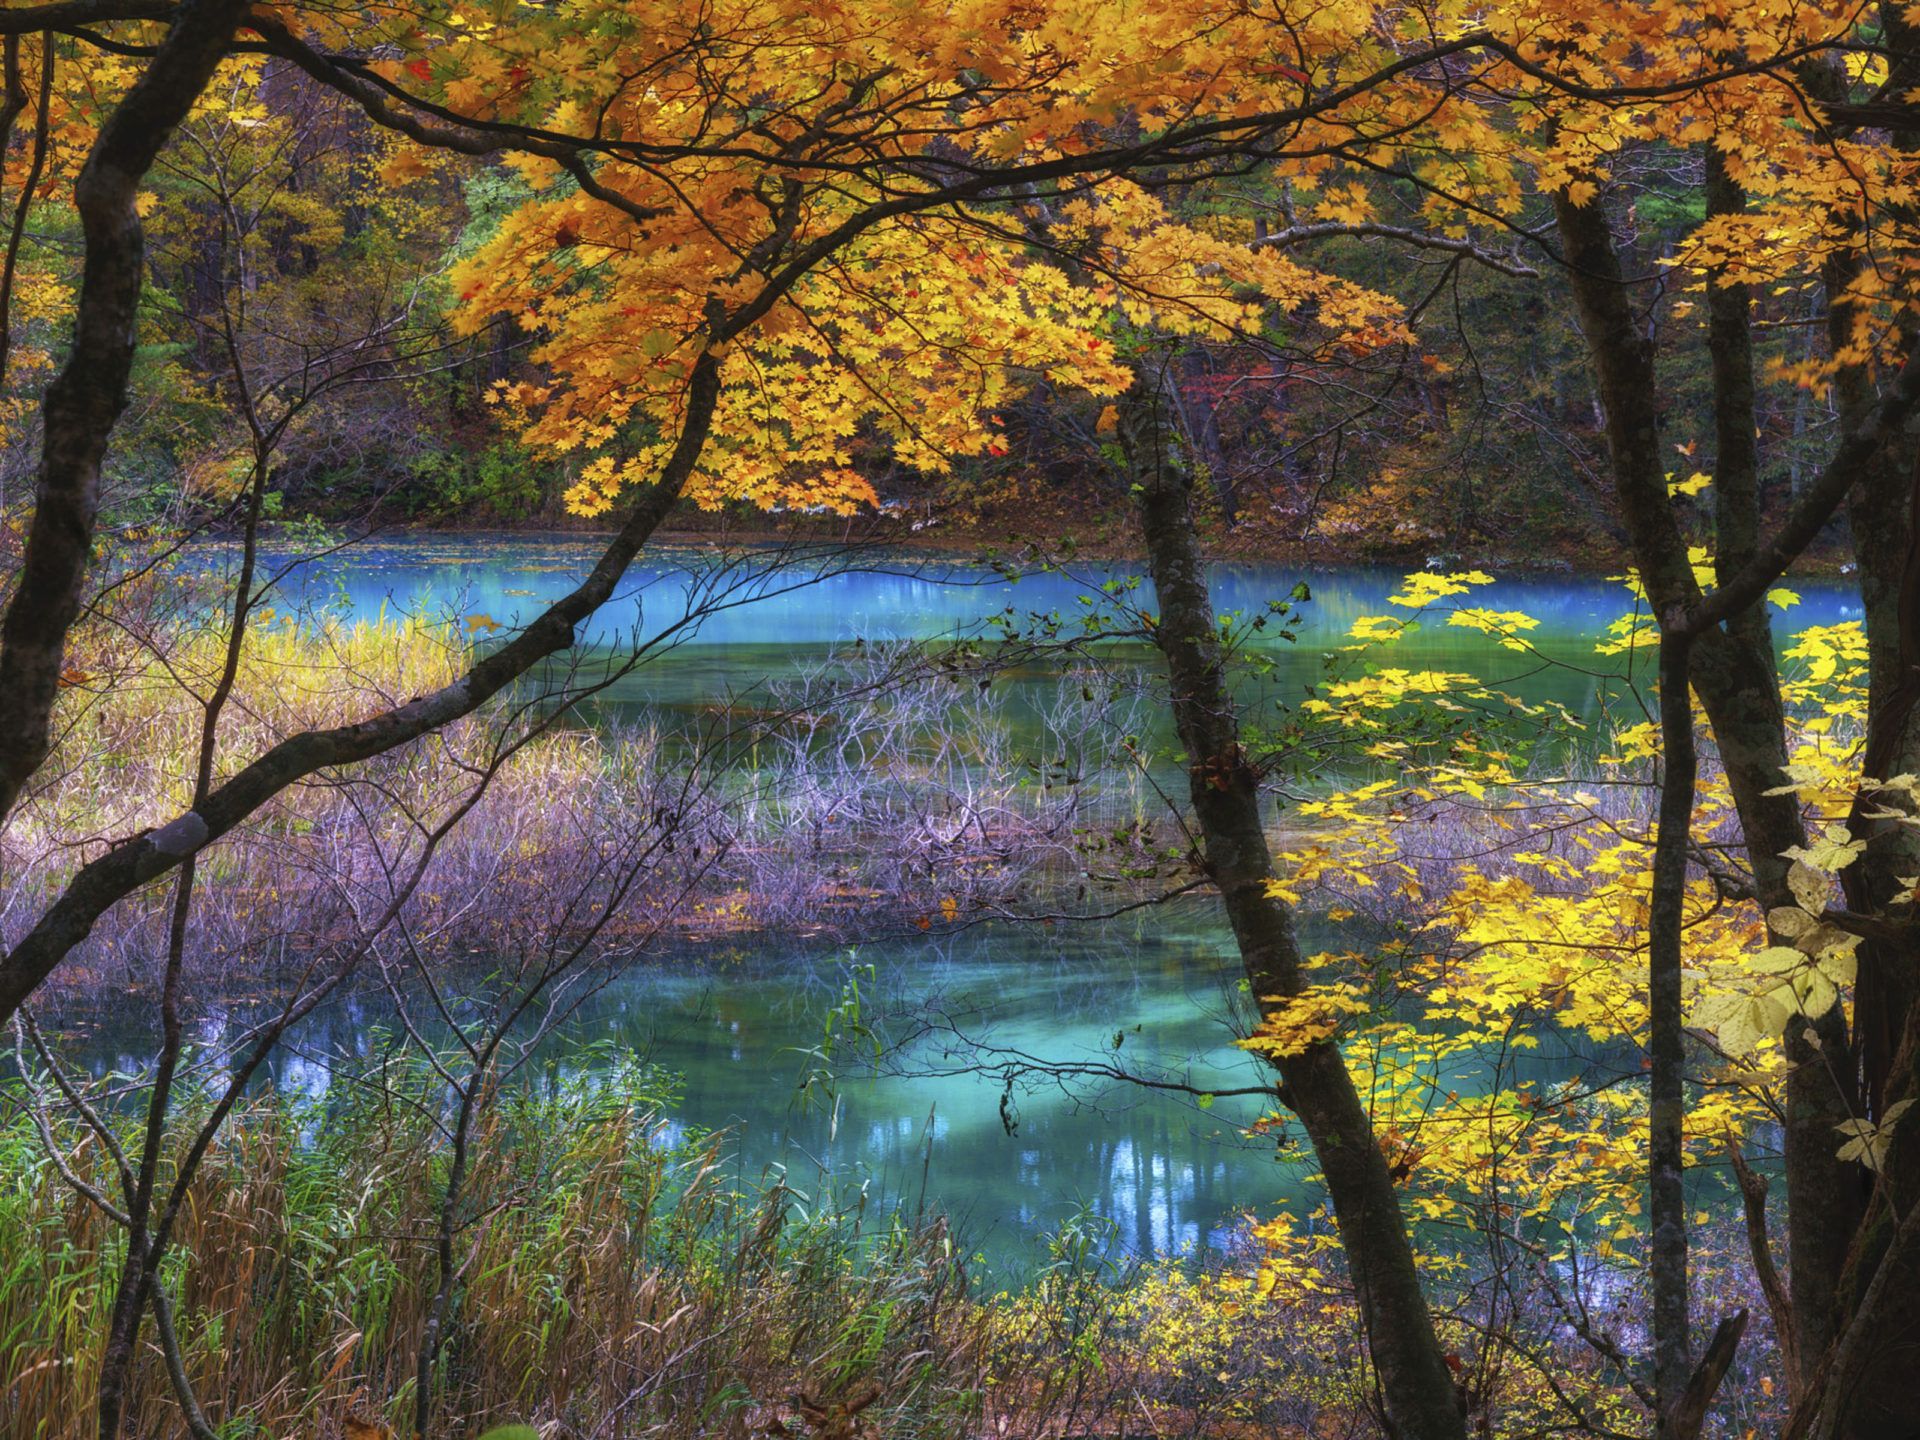 Blue Lake Goshikinuma Fukushima Japan Autumn Scenery Landscape Nature Ultra HD Wallpaper For Desktop Mobile Phones And Lapx2400, Wallpaper13.com